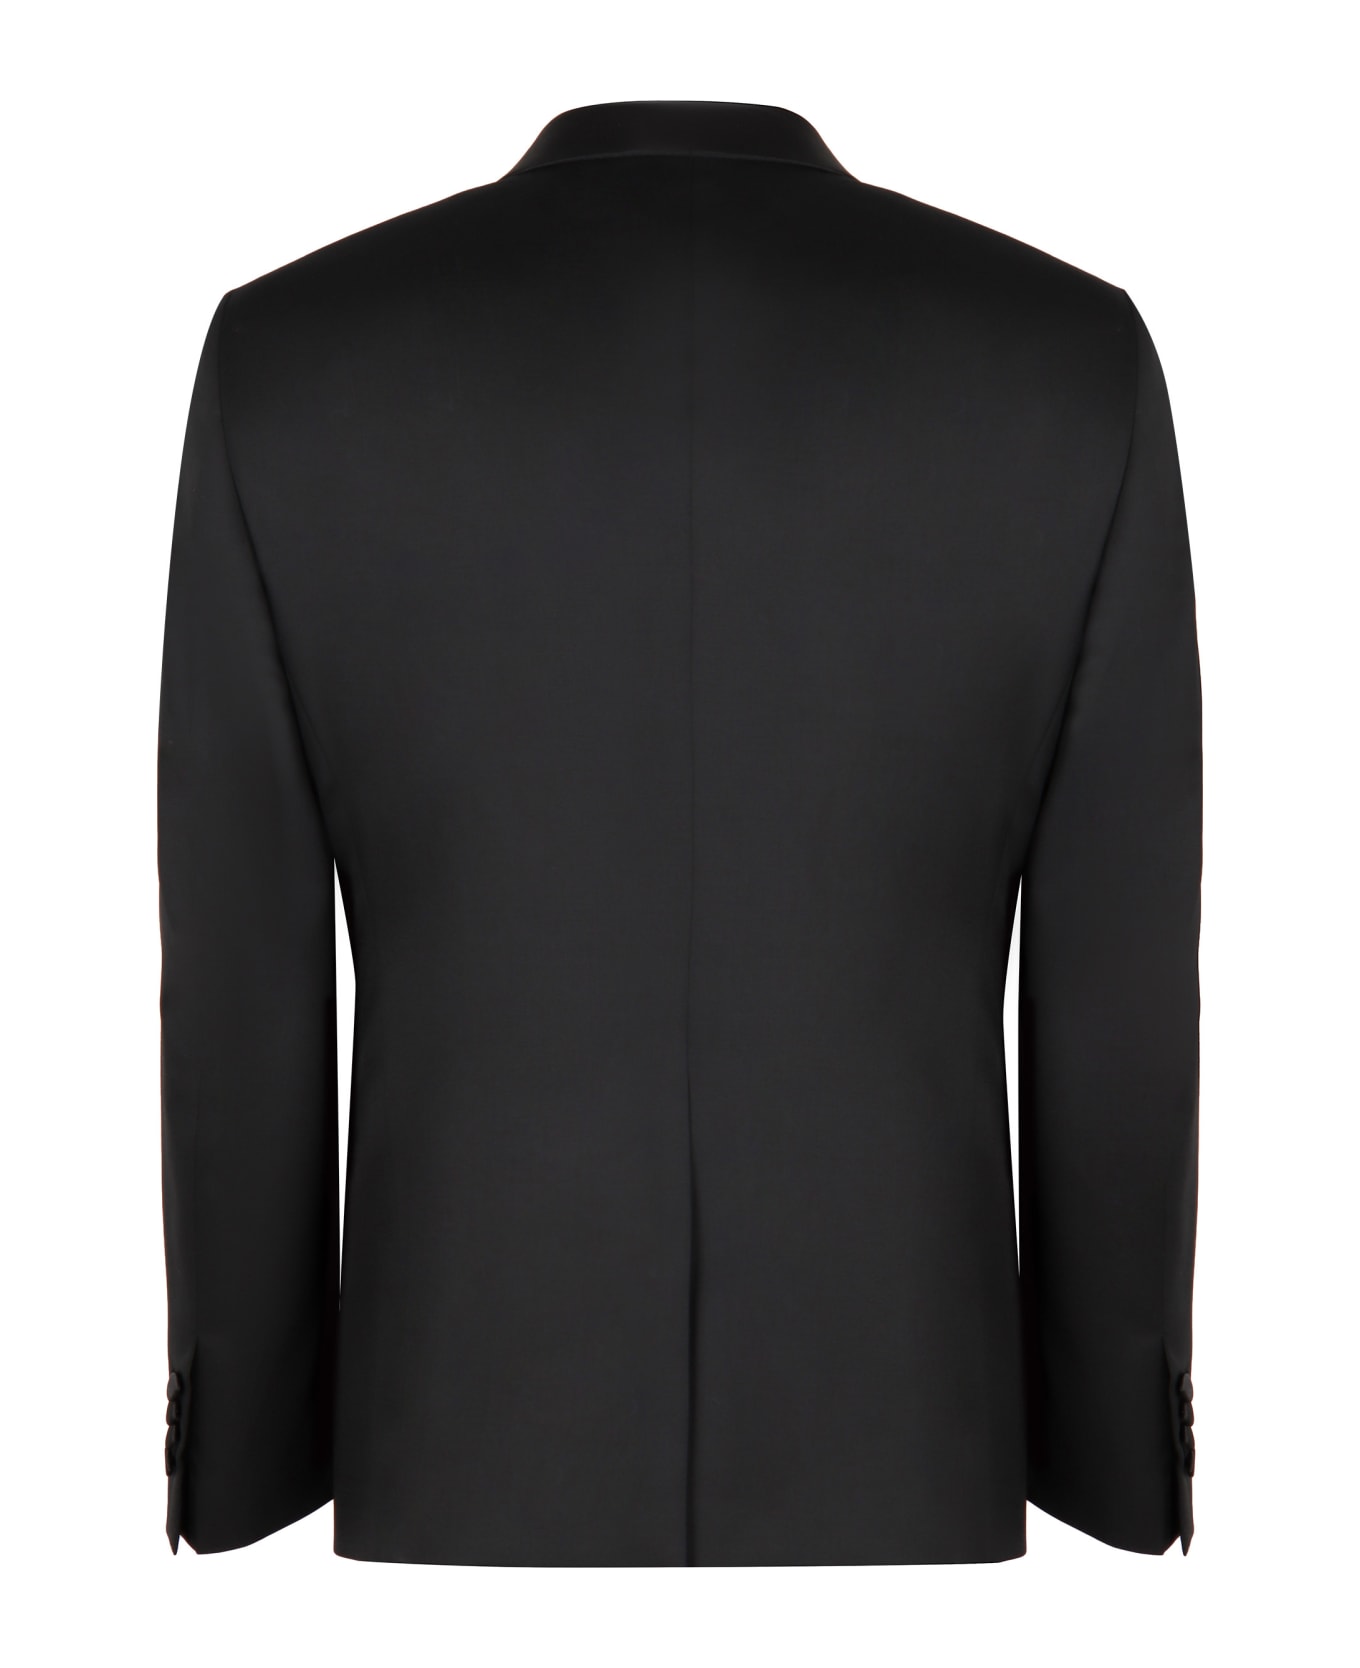 Tagliatore Three-piece Wool Suit - black